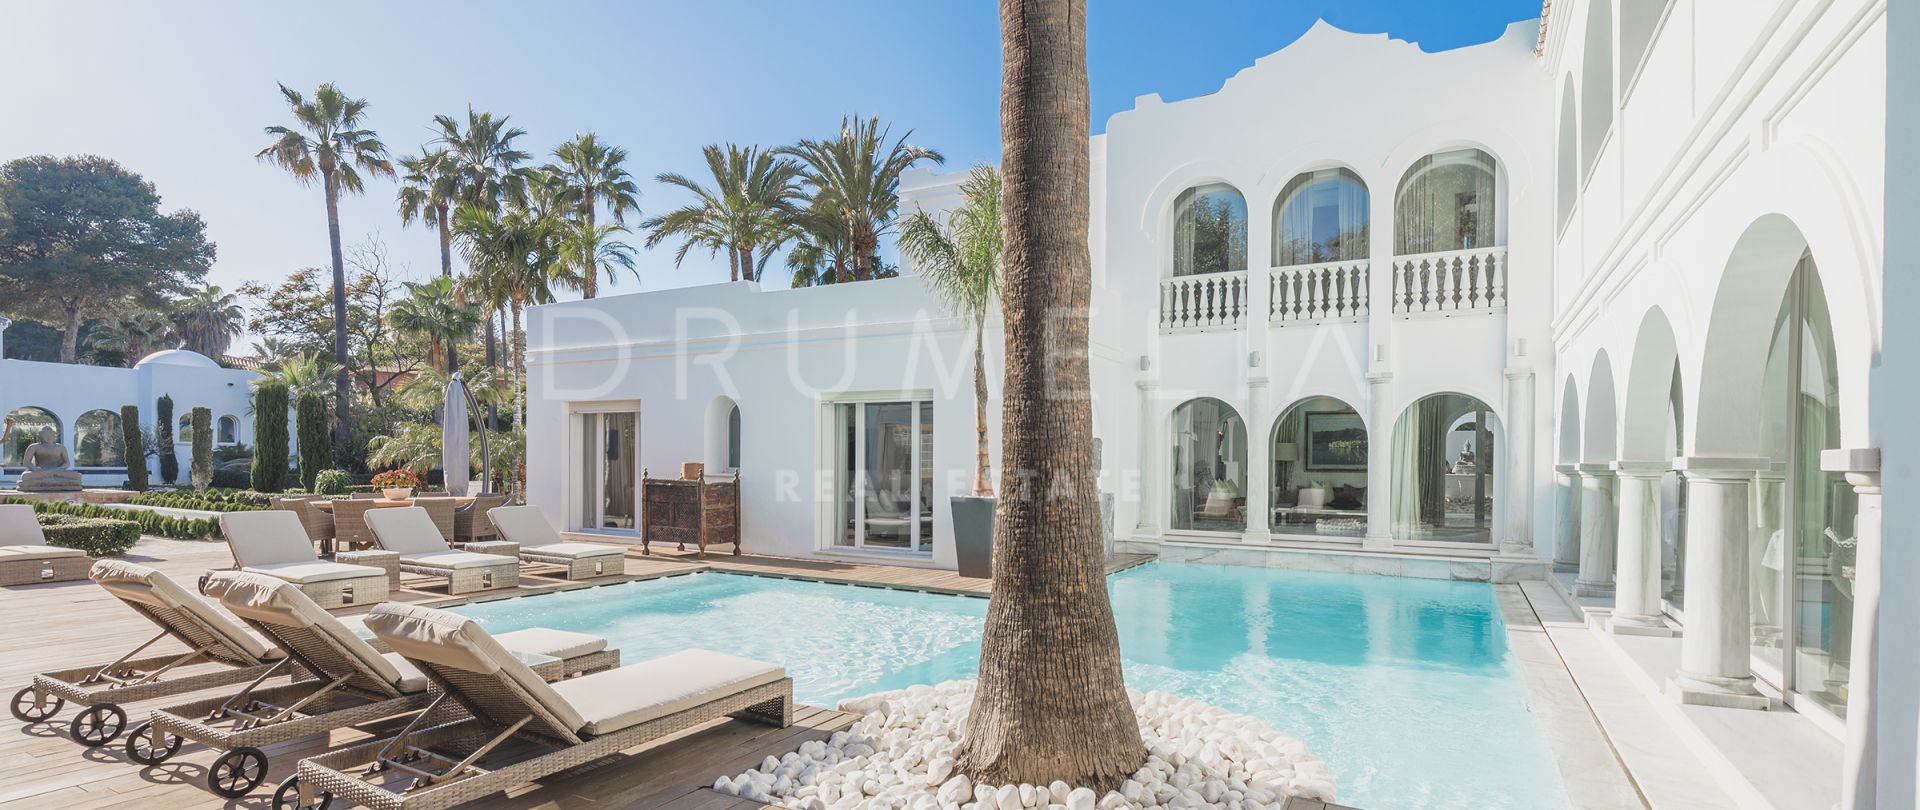 Villa De Estilo Andaluz a pocos metros de la playa en Guadalmina Baja, Marbella